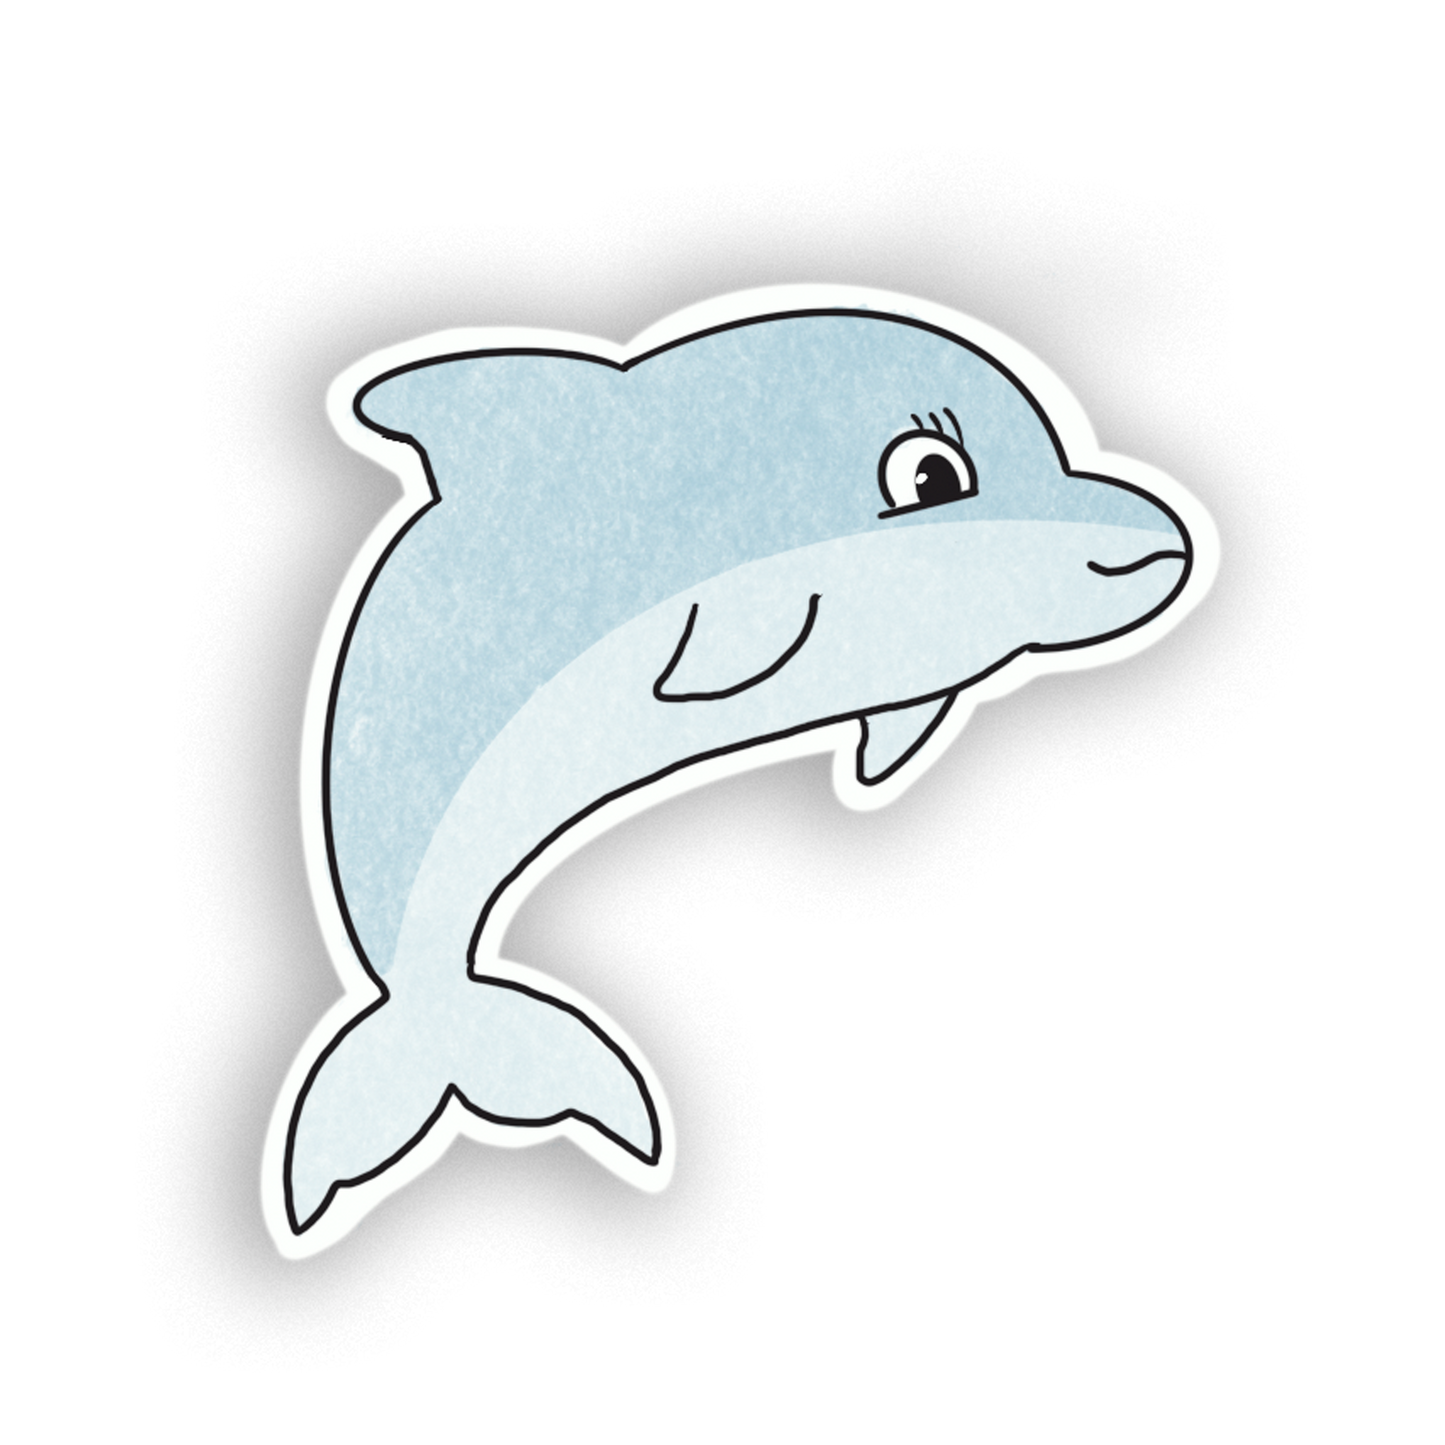 Graceful Blue Dolphin Sticker - Playful Ocean Mammal Sticker